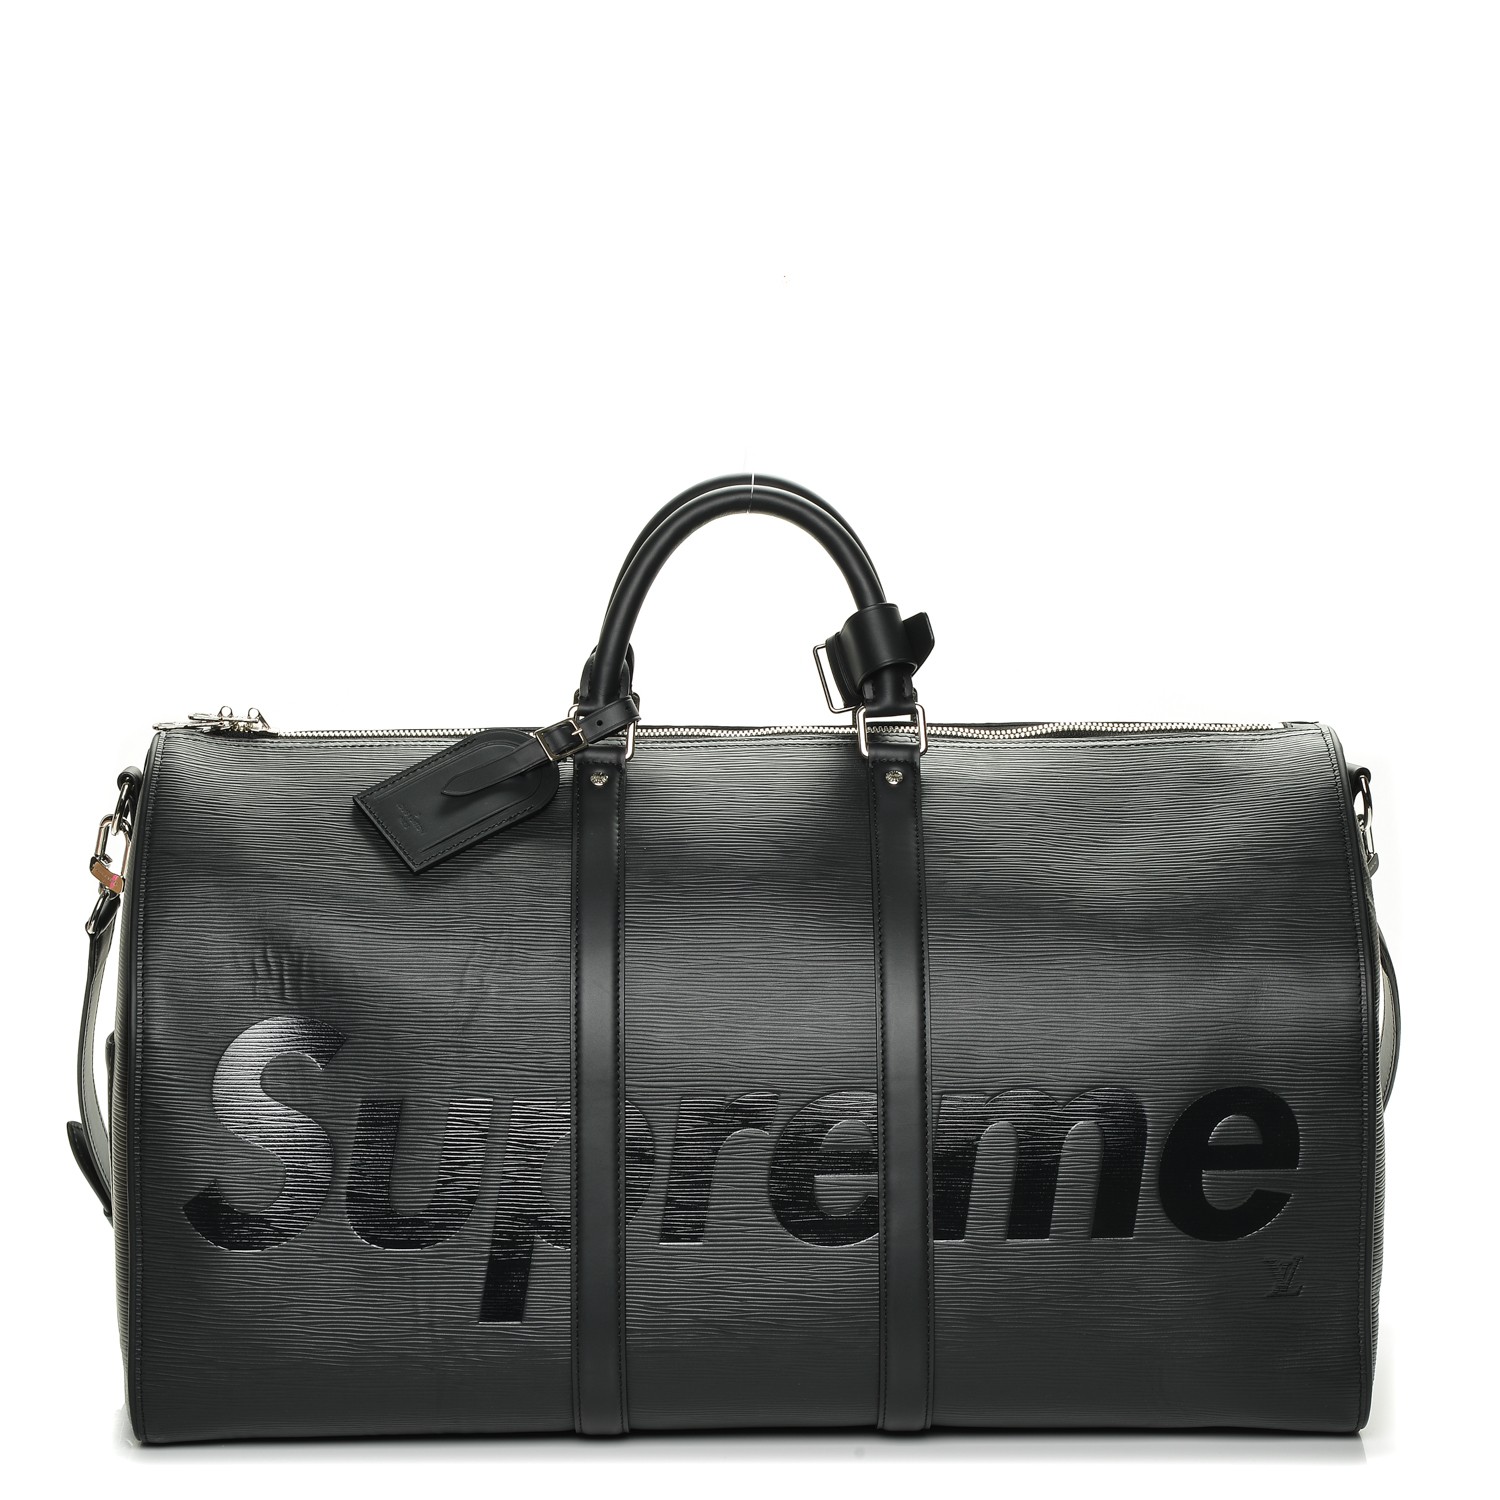 Supreme Lv Duffle Bag Price | Supreme and Everybody